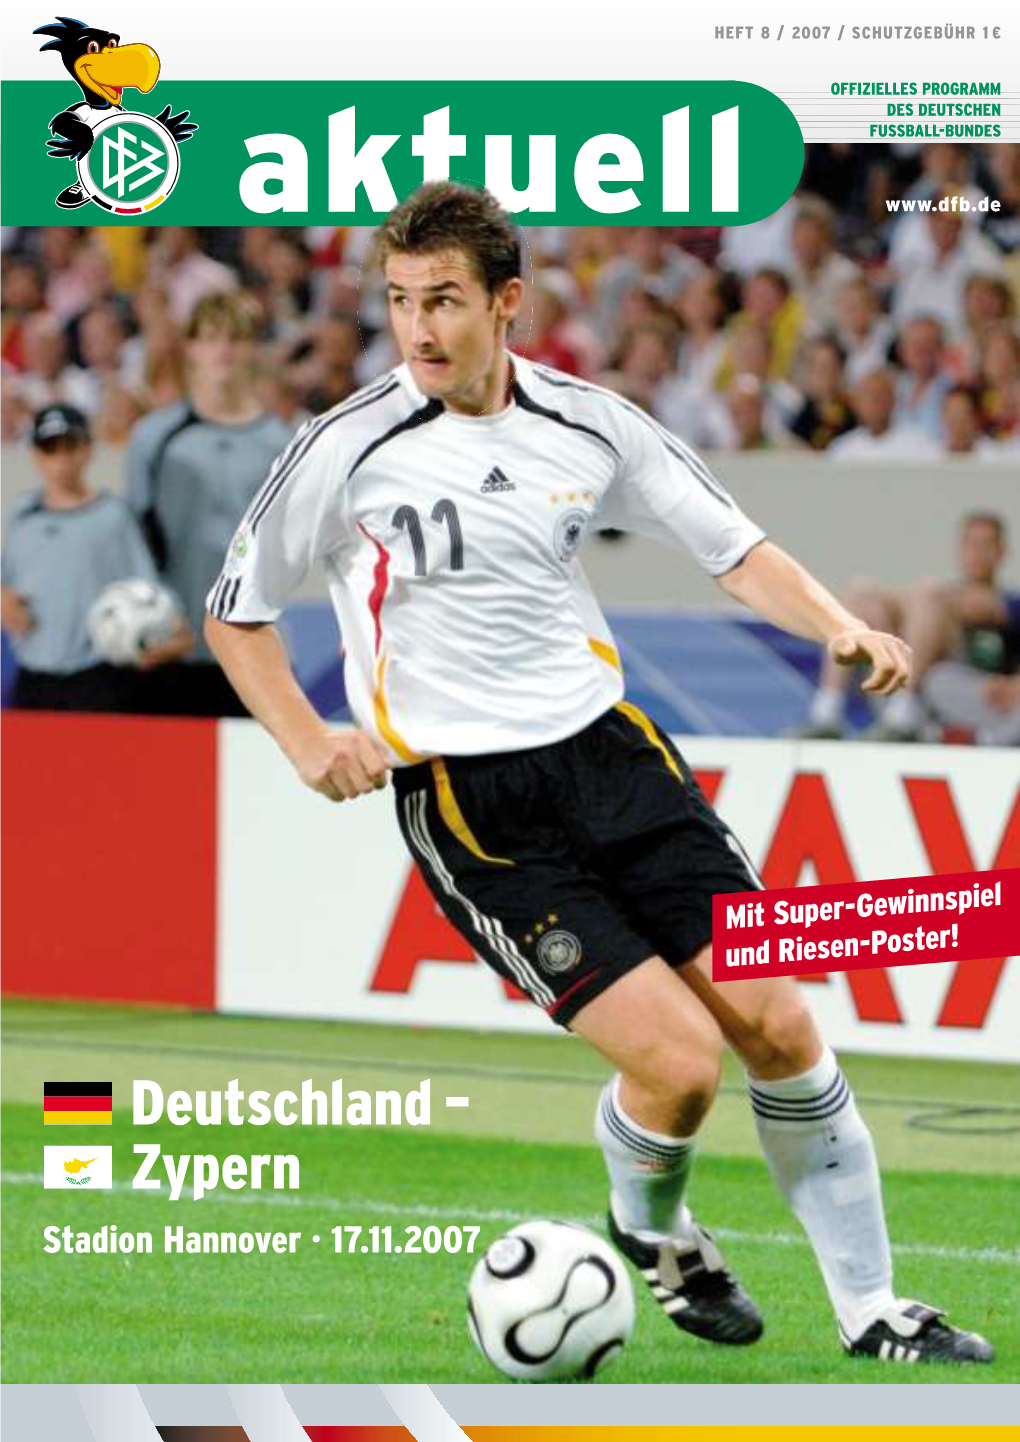 Deutschland – Zypern Stadion Hannover · 17.11.2007 Hat 0,0% Und Alles Was Sie an Bitburger Lieben